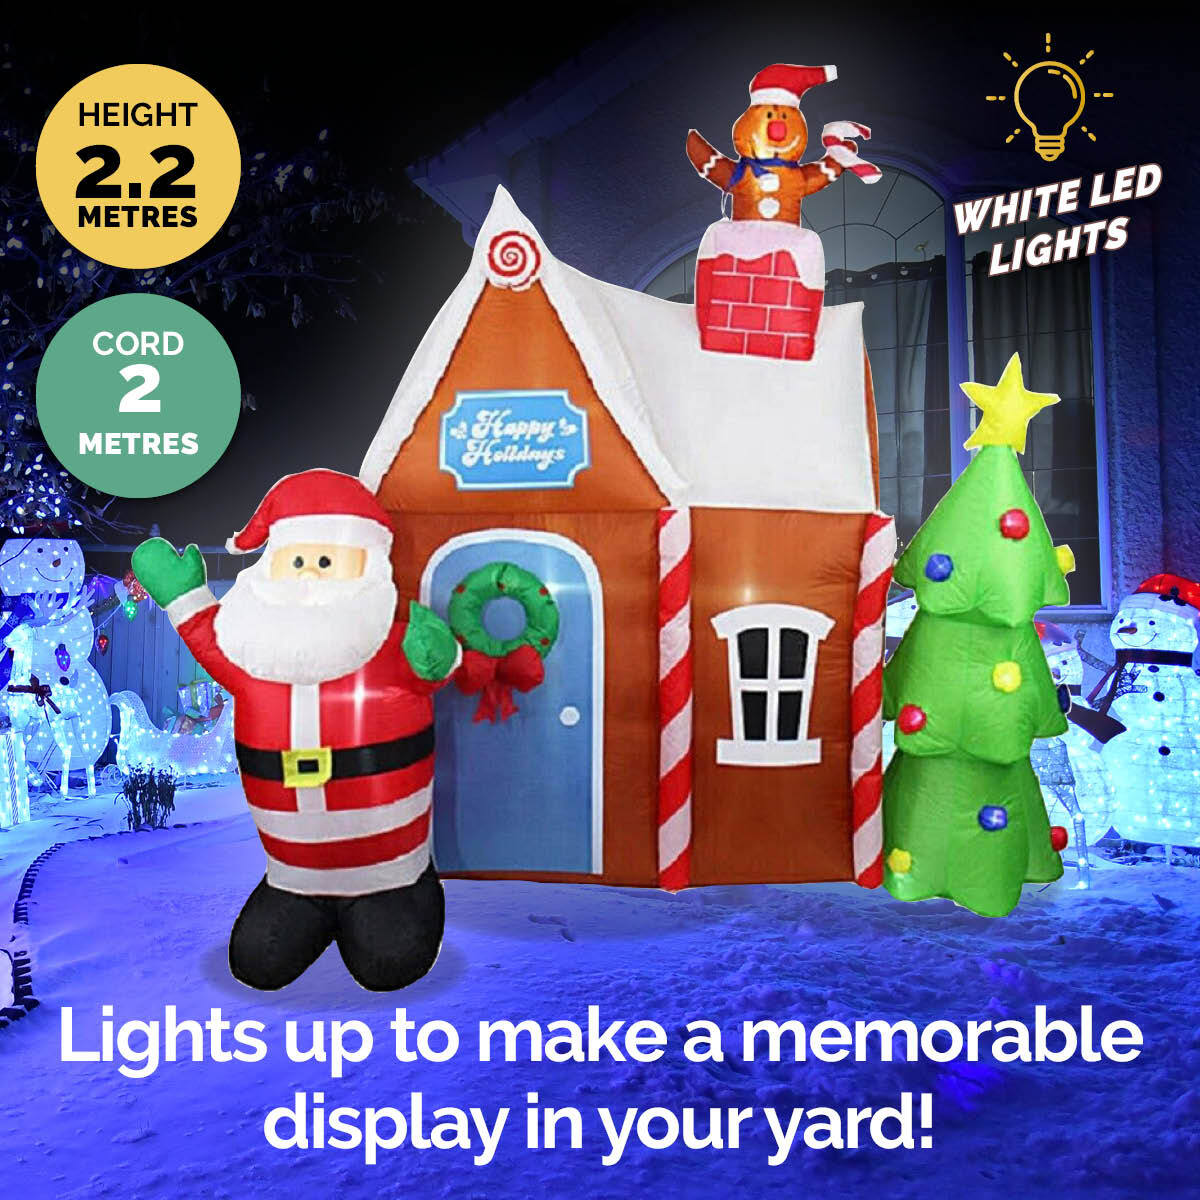 Christmas By Sas 2.2m Gingerbread House & Santa Self Inflating LED Lights - SILBERSHELL